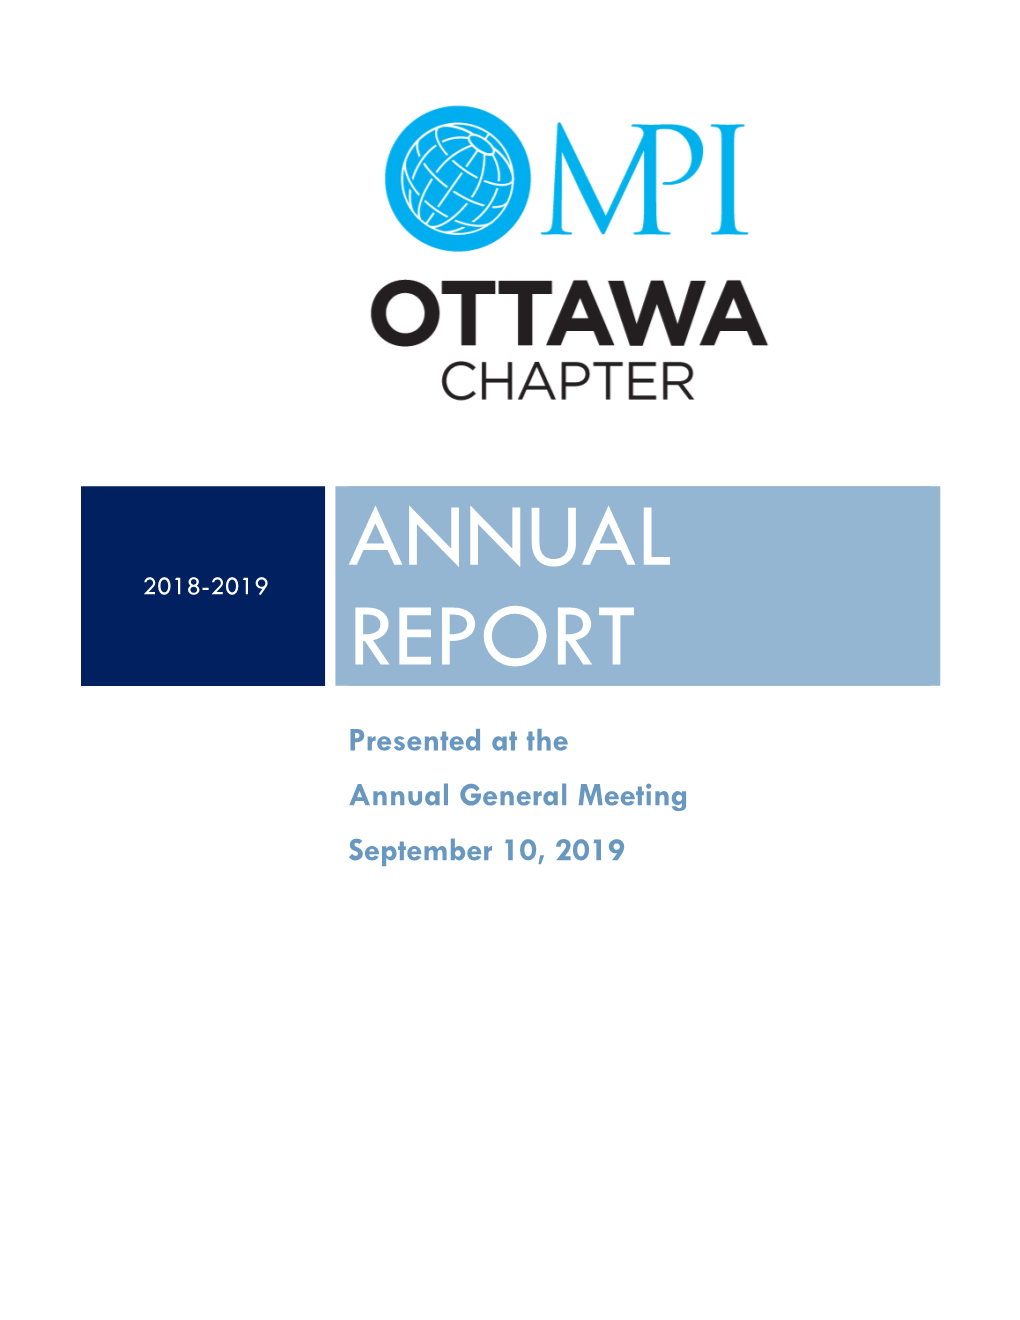 MPI Ottawa Annual Report: 2018-2019